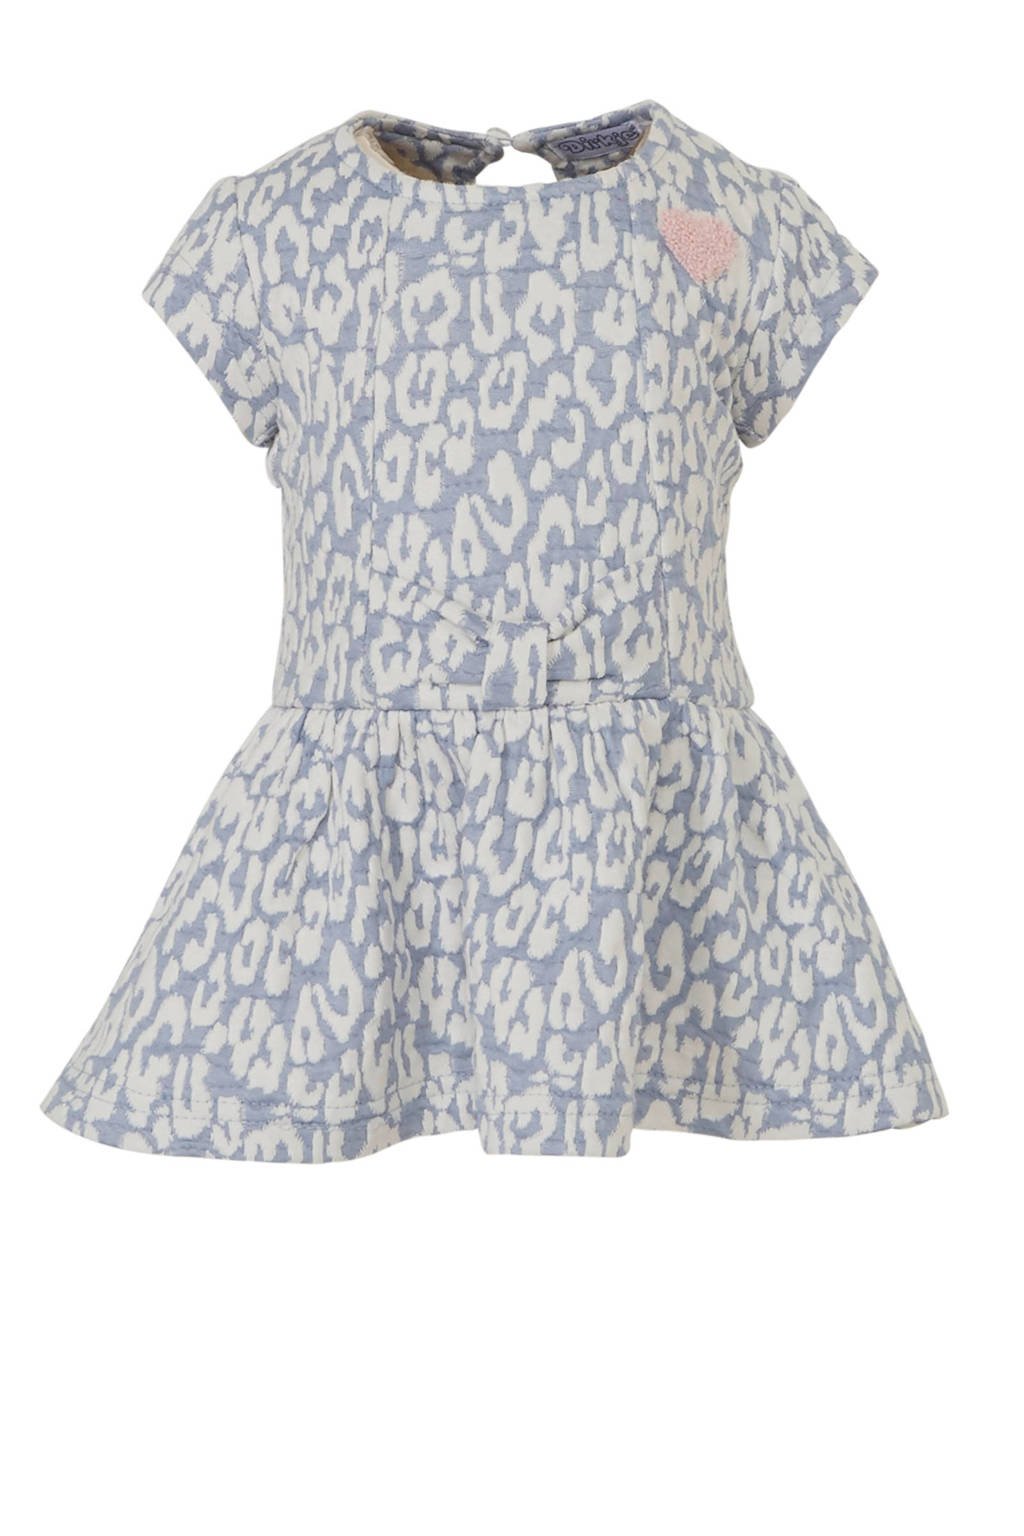 Dirkje baby jurk met panterprint en 3D applicatie lichtblauw/wit/lichtroze